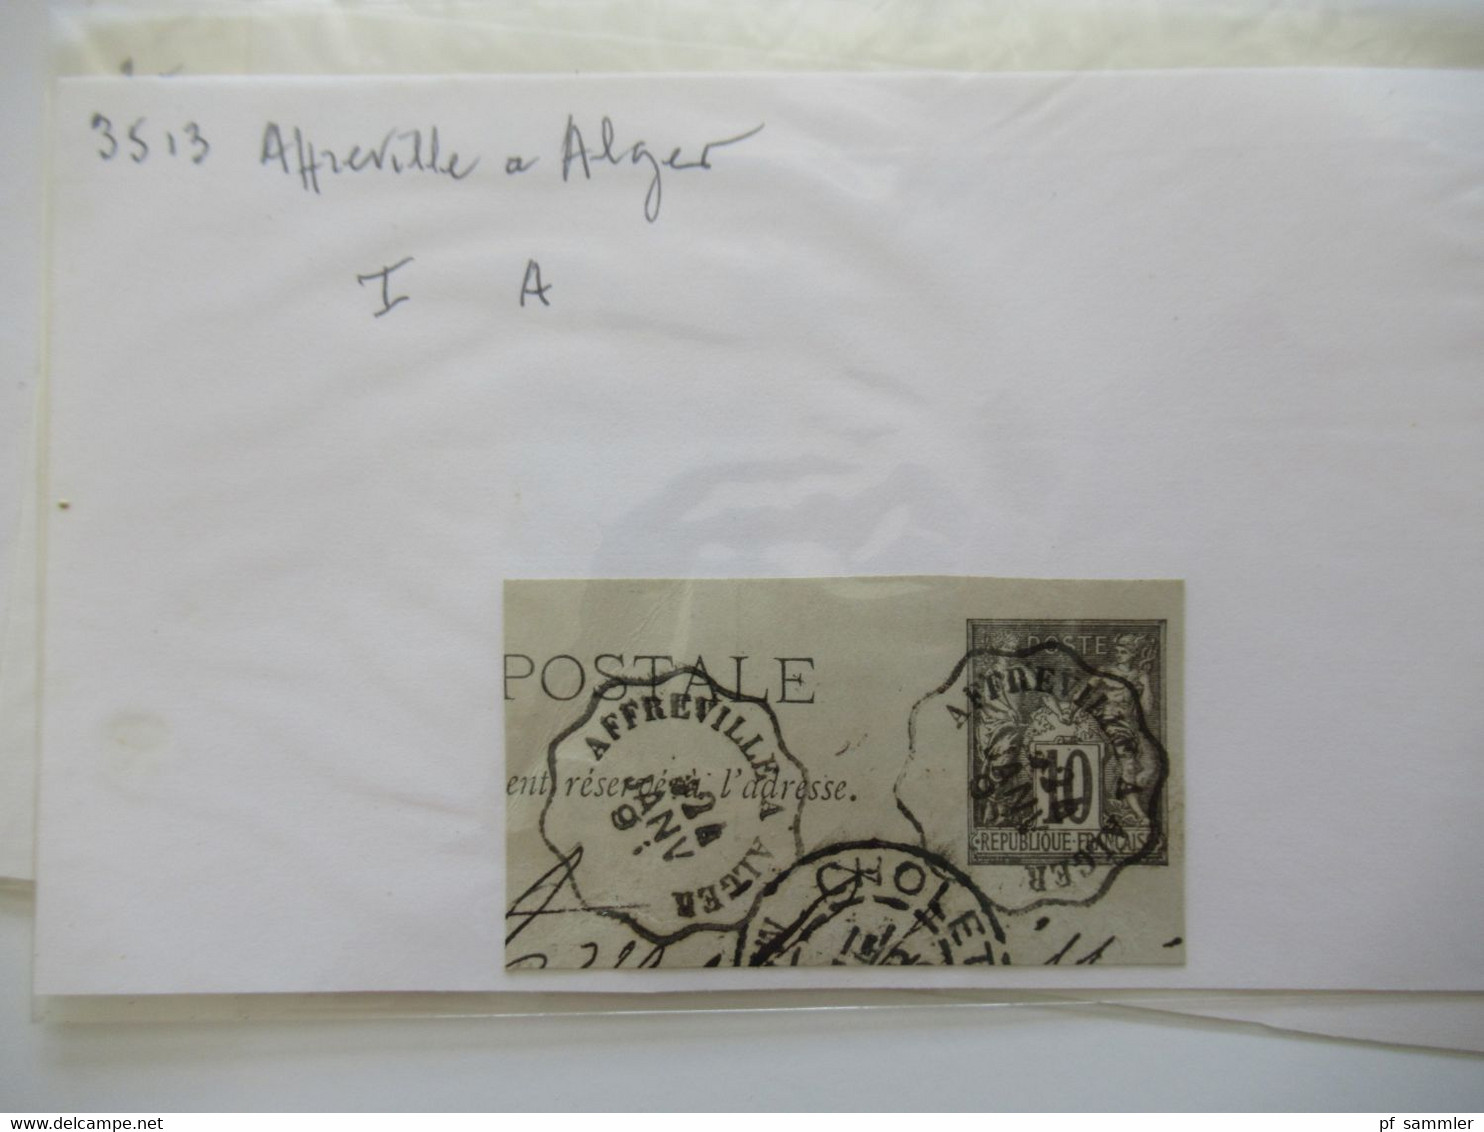 Frankreich Gebiete Algerien / Alger u. Constantine Marken kleiner Posten auch ein Briefstück Stp 1953 Innsbruck A Lindau